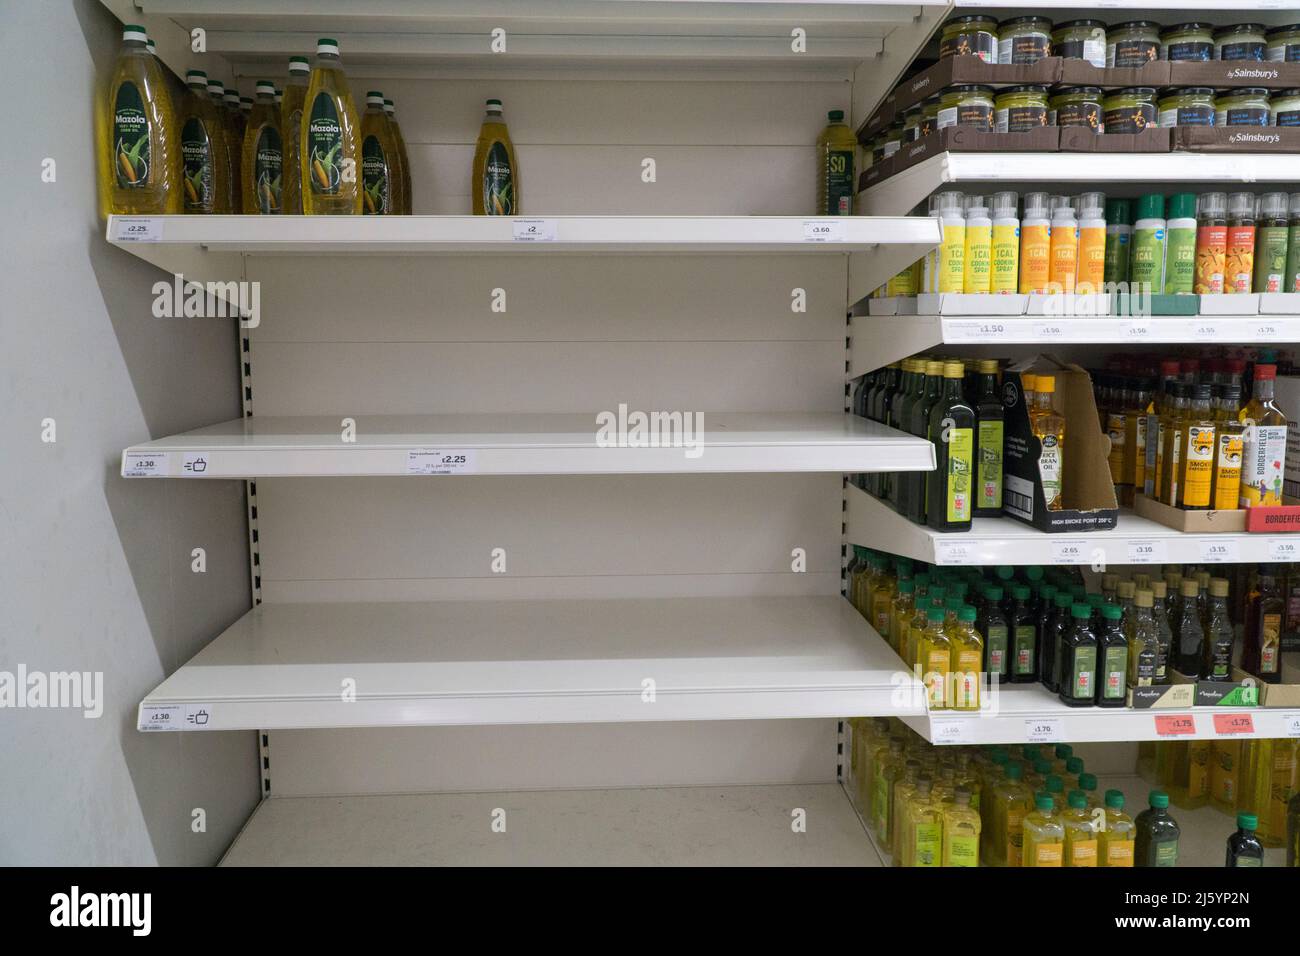 Balham, London, 26. April 2022: Eine Filiale von Sainsbury's im Süden Londons, die meisten Regale mit Sonnenblumenöl und Pflanzenöl sind leer, da die Kunden sich in Erwartung von Preissteigerungen und Lieferengpässen, die durch den russischen Krieg gegen die Ukraine verursacht wurden, eindecken. Andere Supermarktketten haben Rationierungen eingeführt, um die Anhäufung von Menschen zu verhindern. Es gibt auch Mangel an zubereitetem Gemüse und Salaten. Anna Watson/Alamy Live News Stockfoto